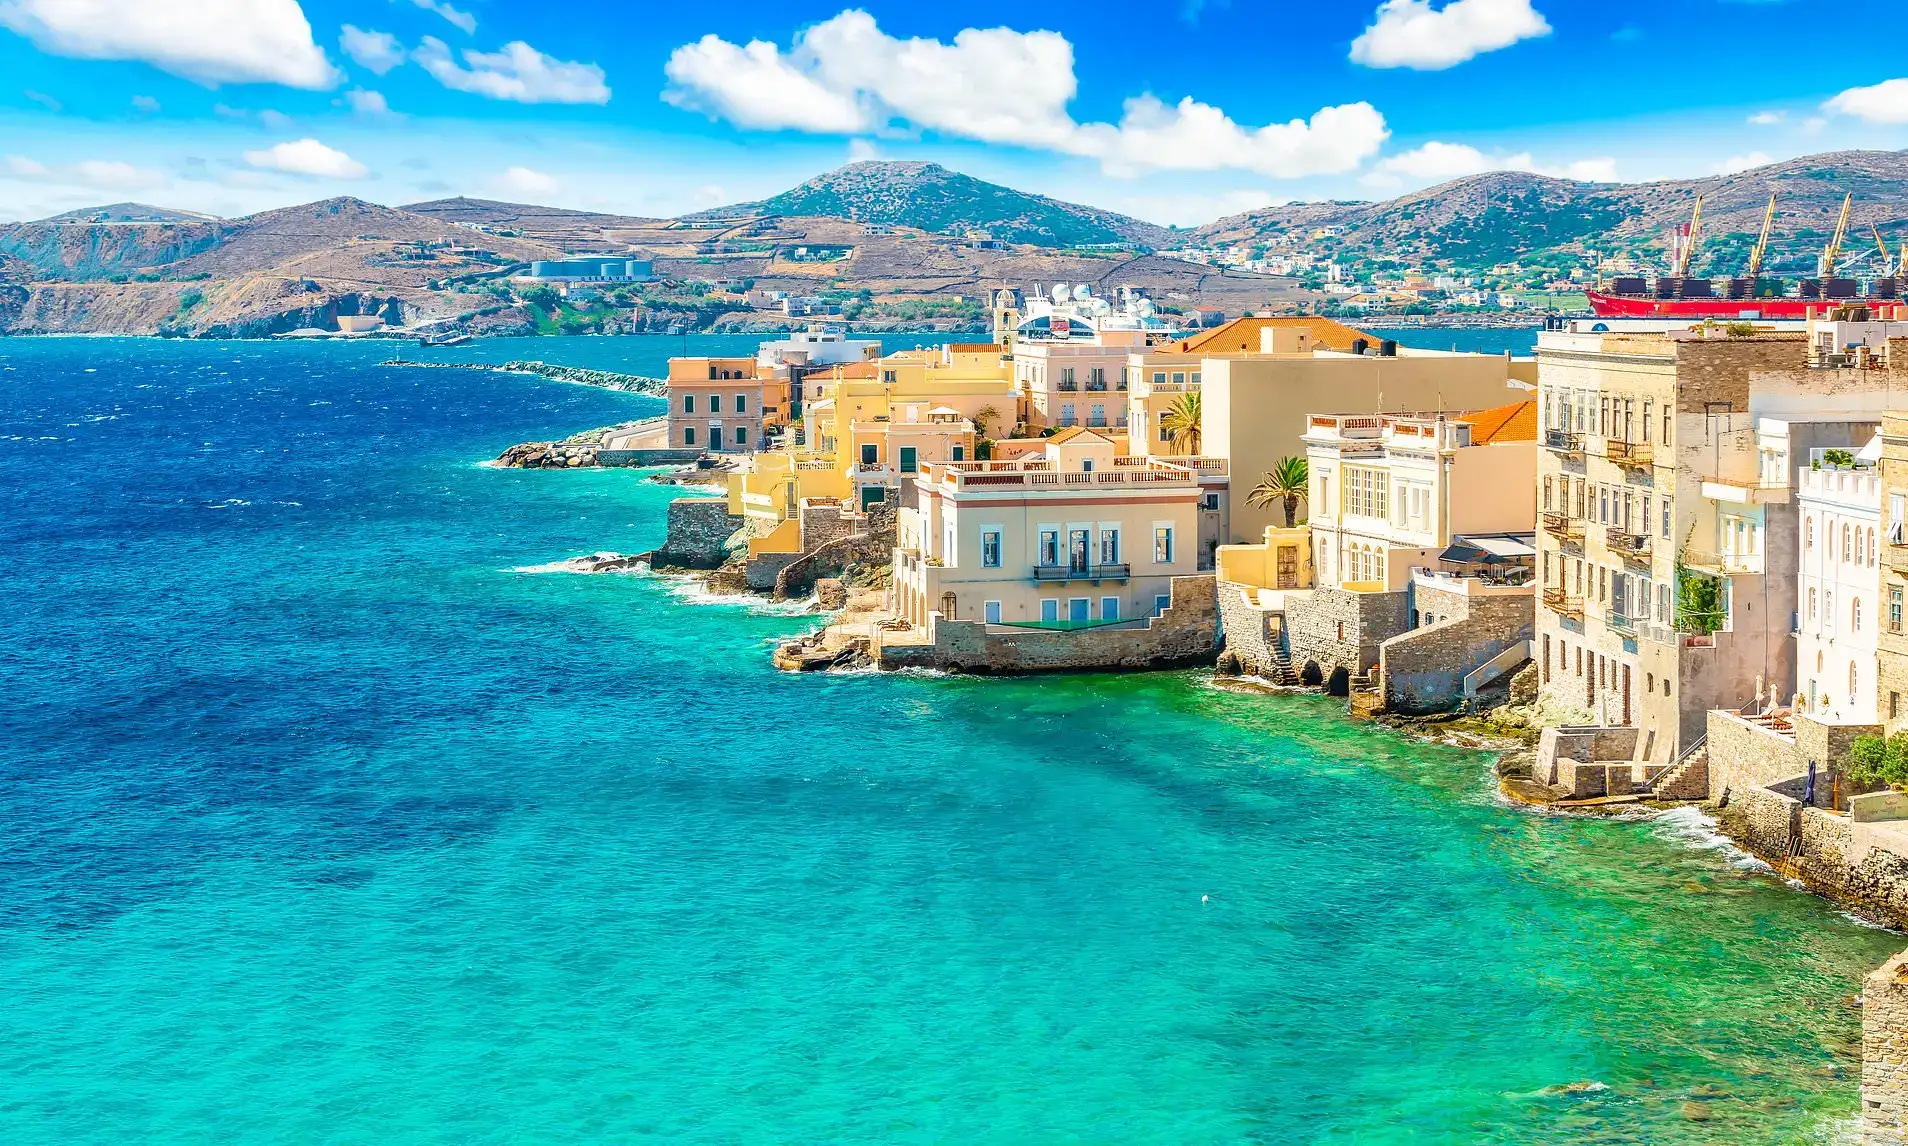 Greece's Jewel: Syros Island